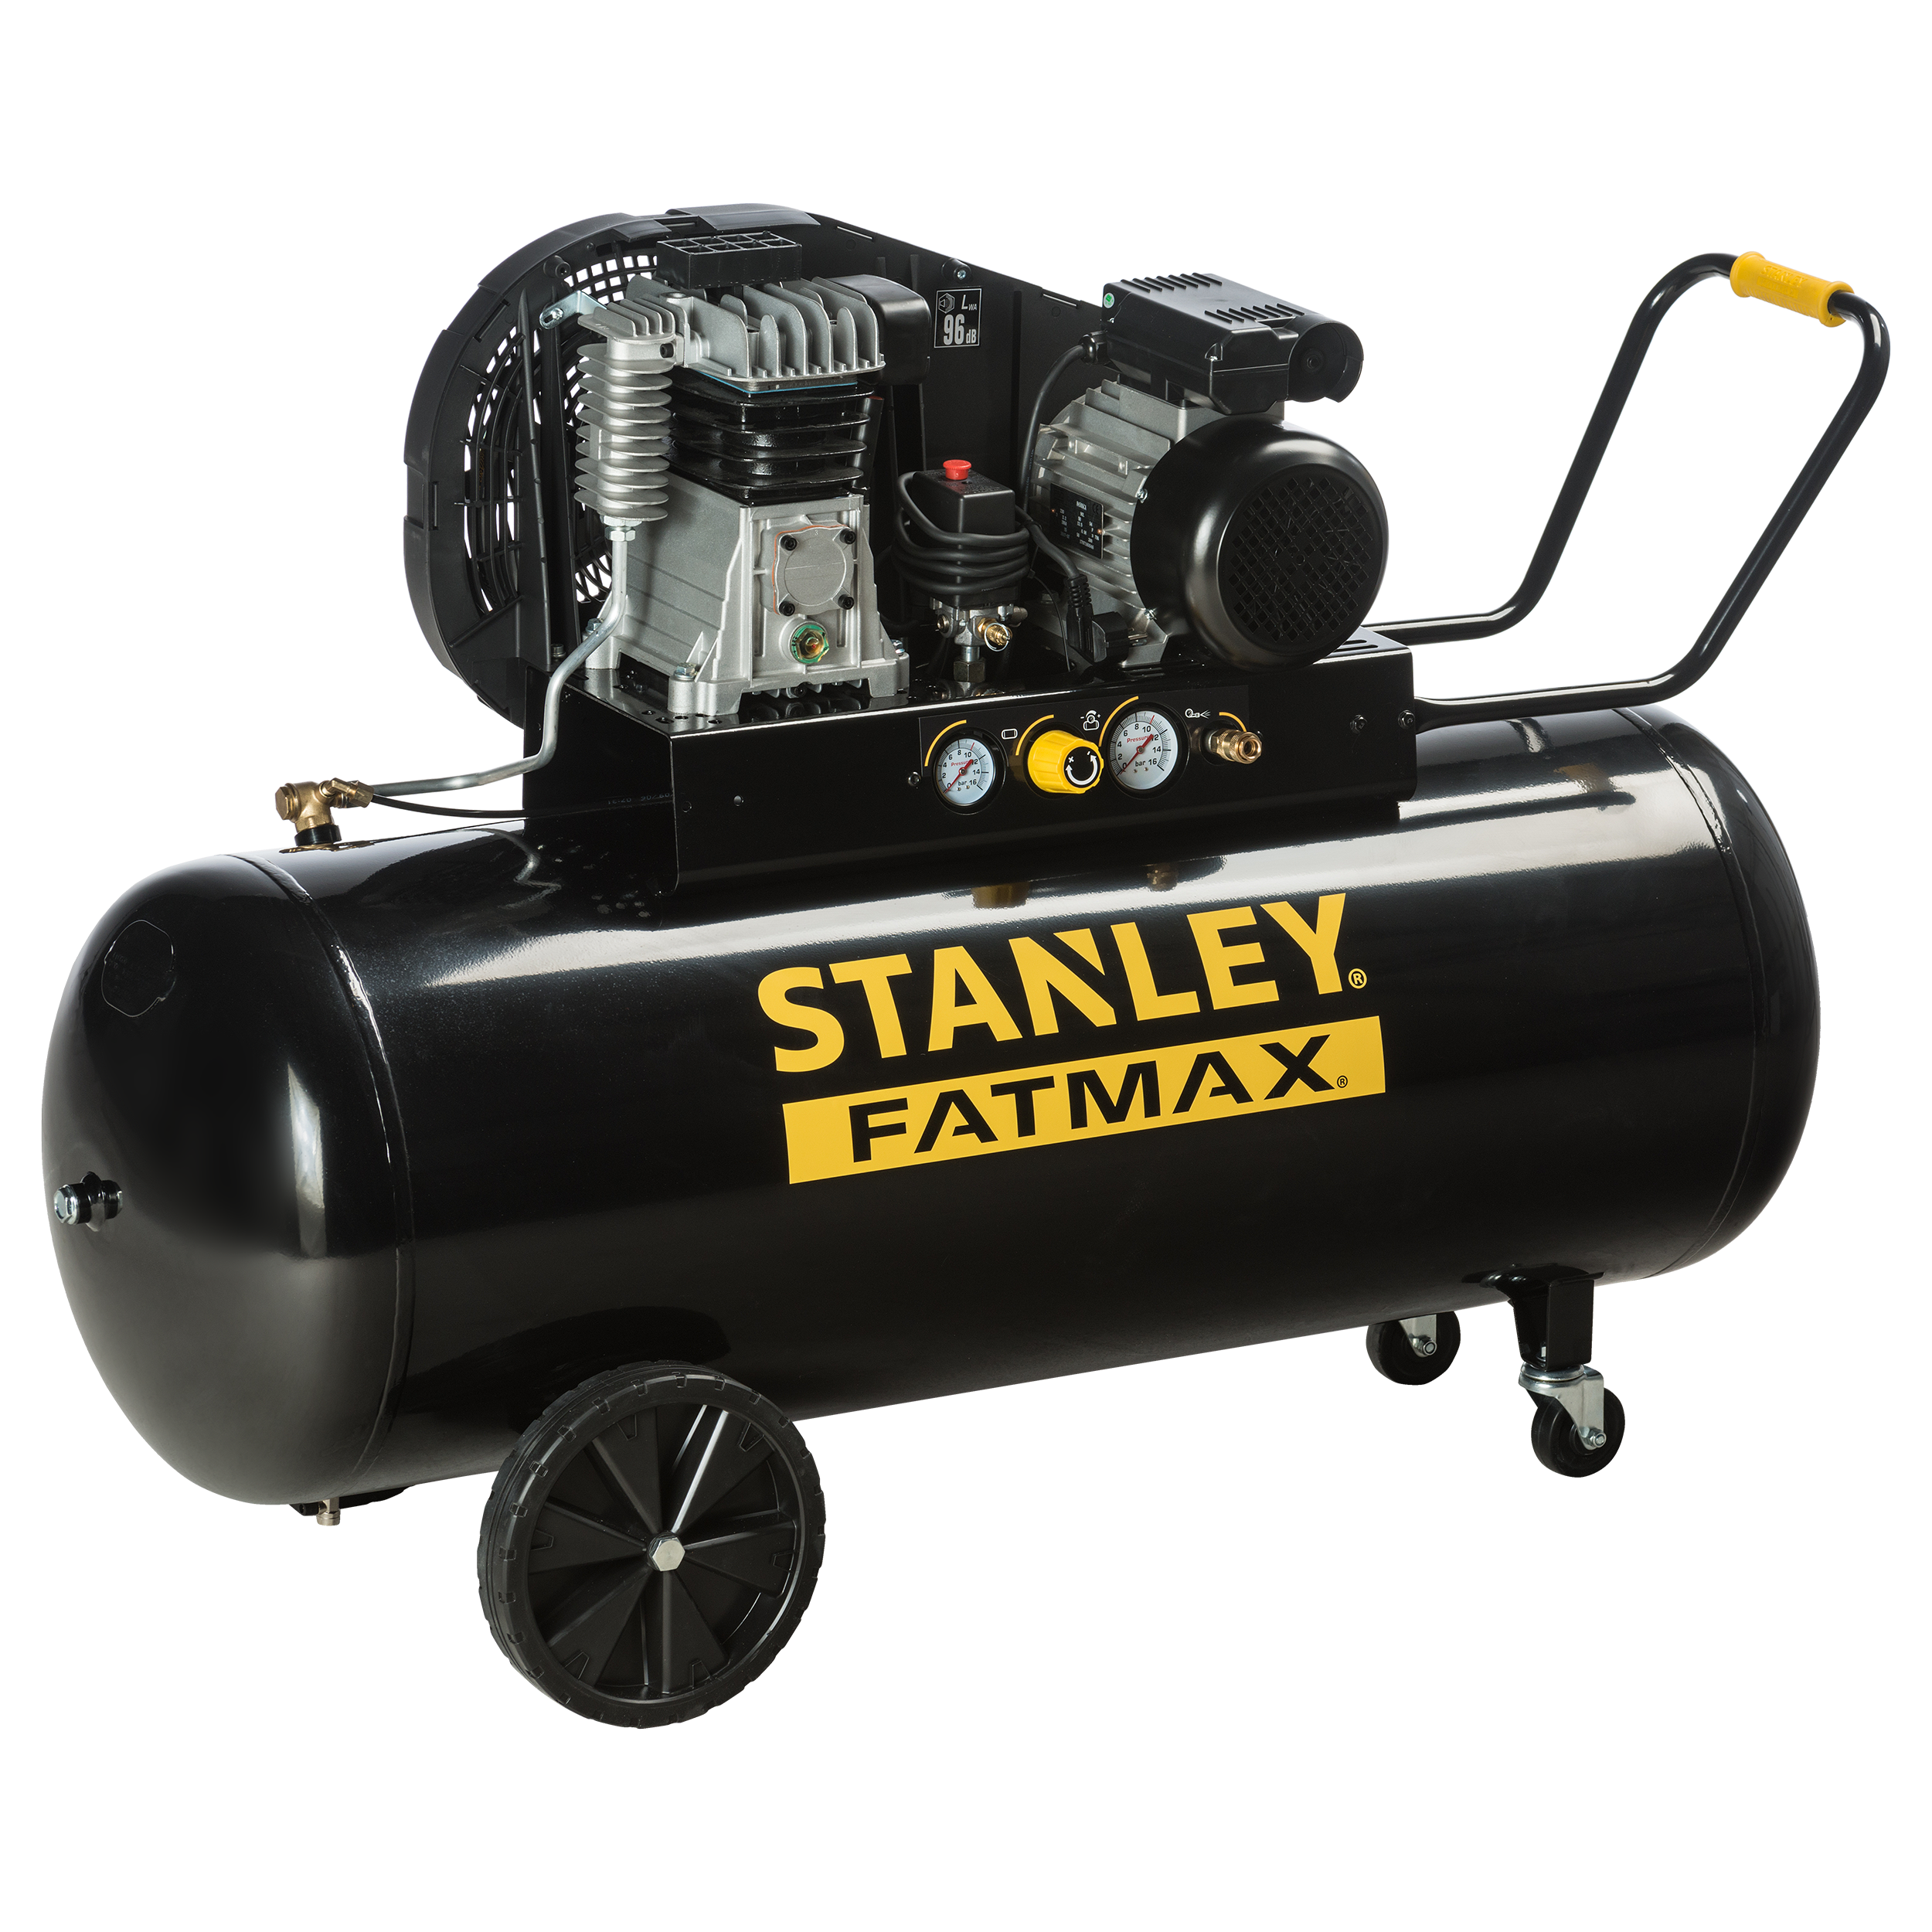 Compresor aceite stanley fatmax b350/10/200 stanley fatmax de 3 cv y 200l de dep